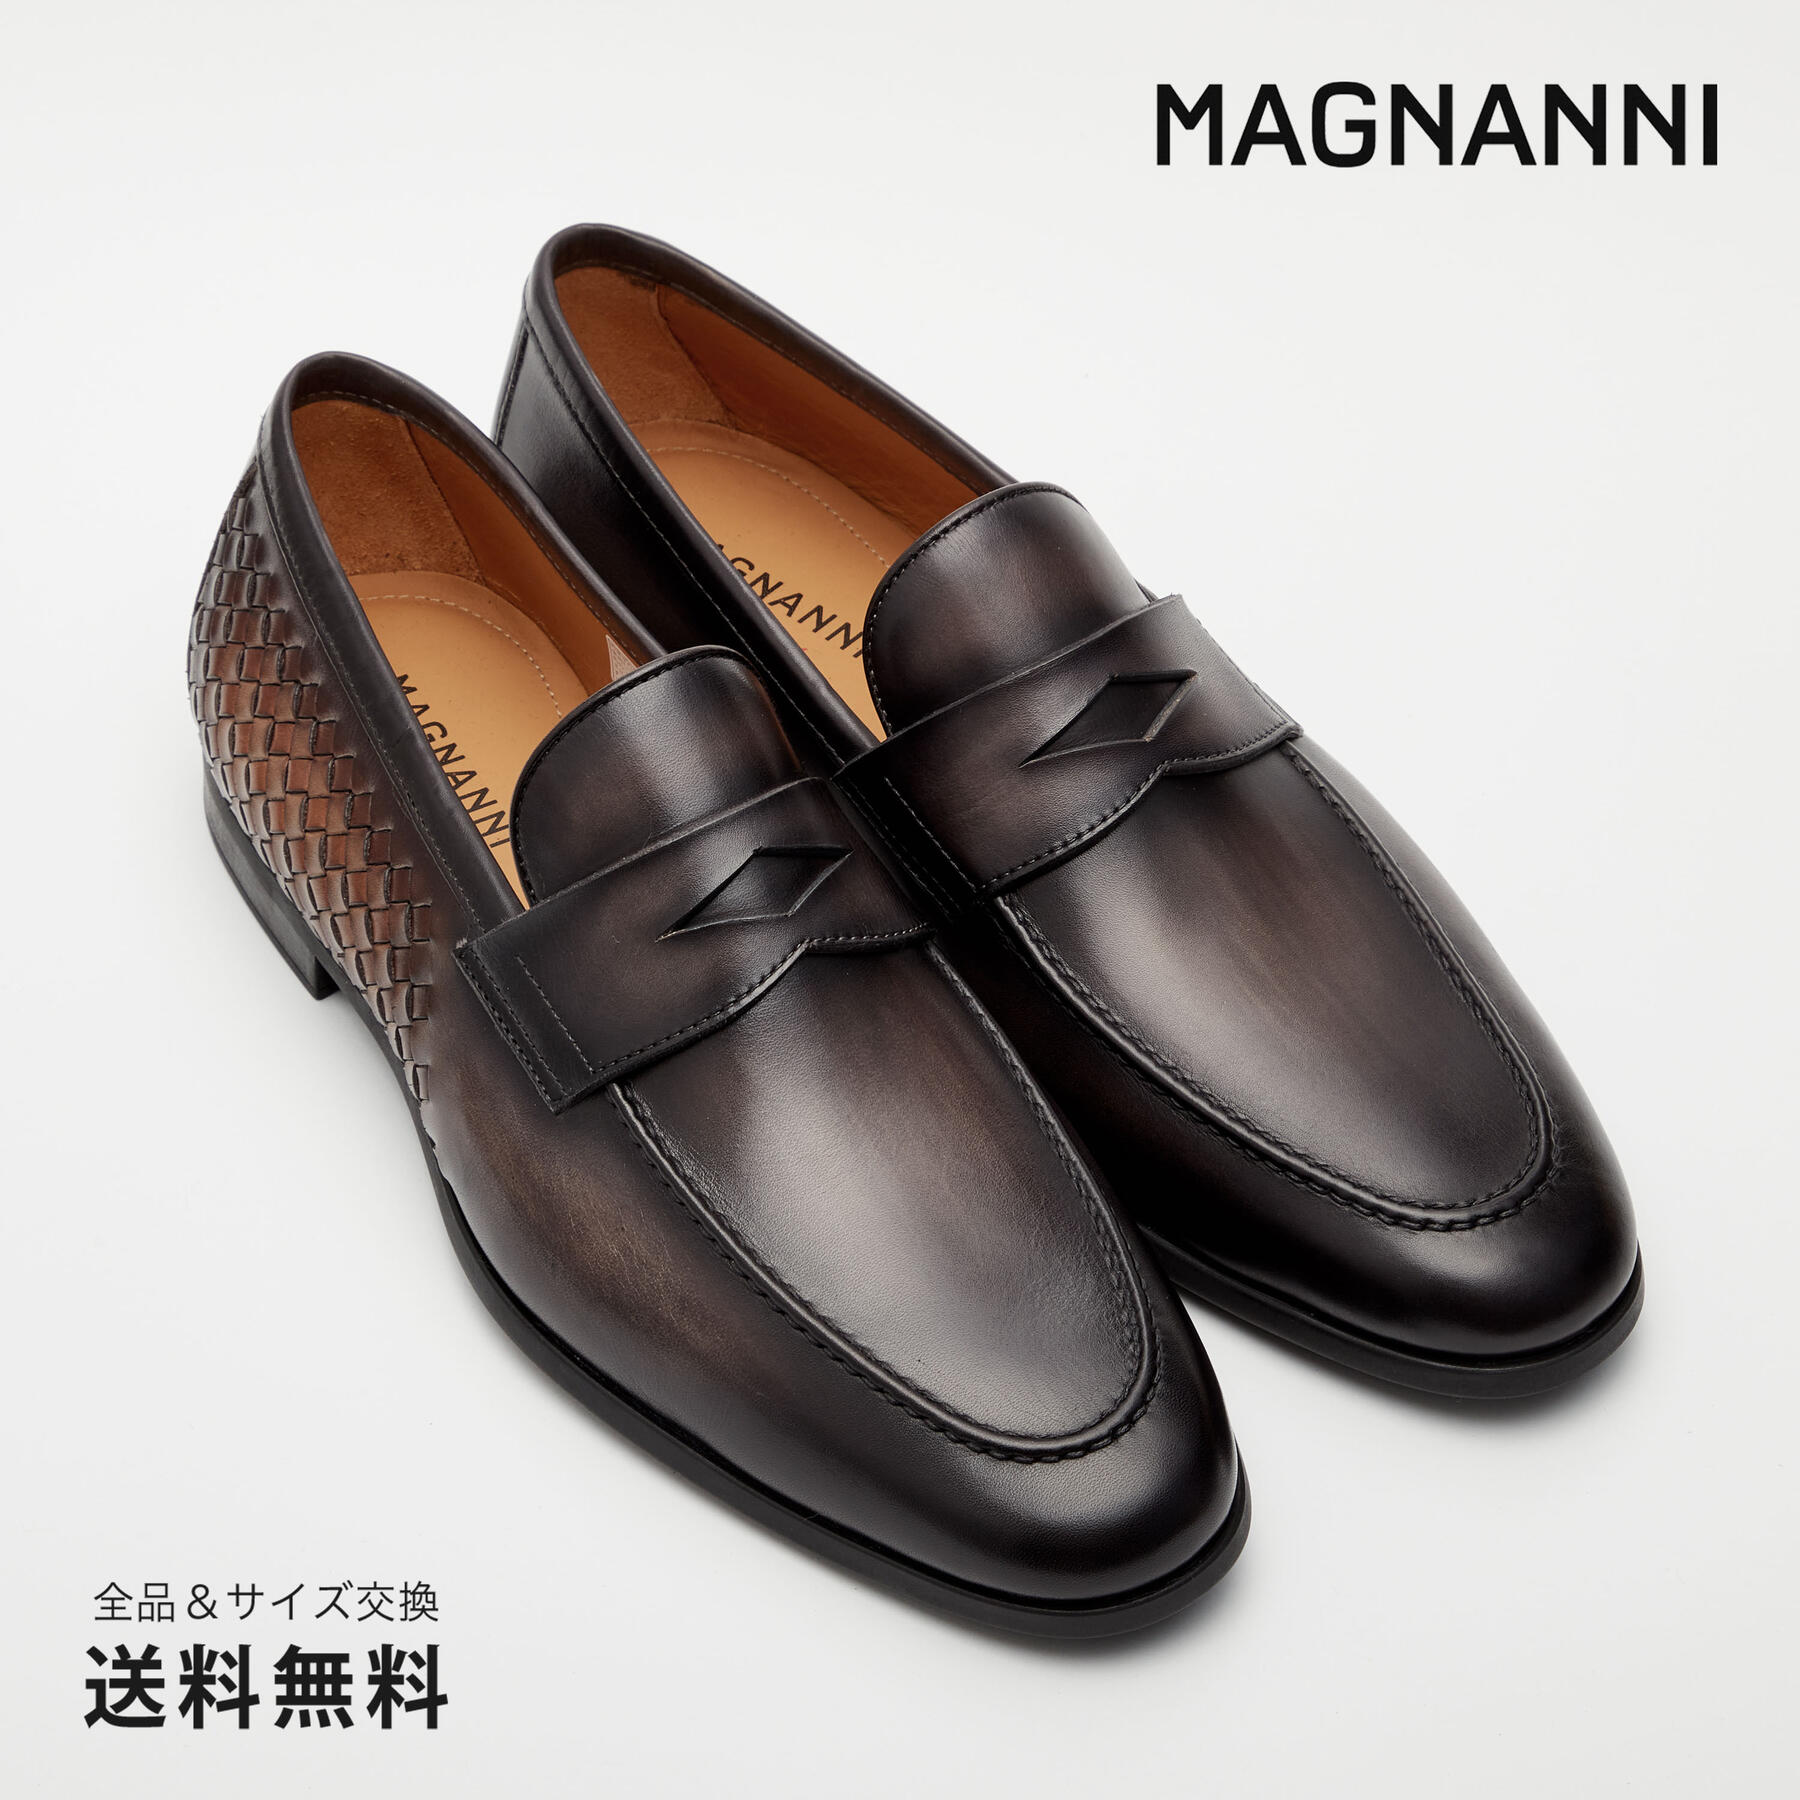 特急T\'837 MAGNANNI マグナーニ メンズ コインローファー ビジネスシューズ 39 約 24.5cm ブラウン レザー 本革 高級靴 24.5cm